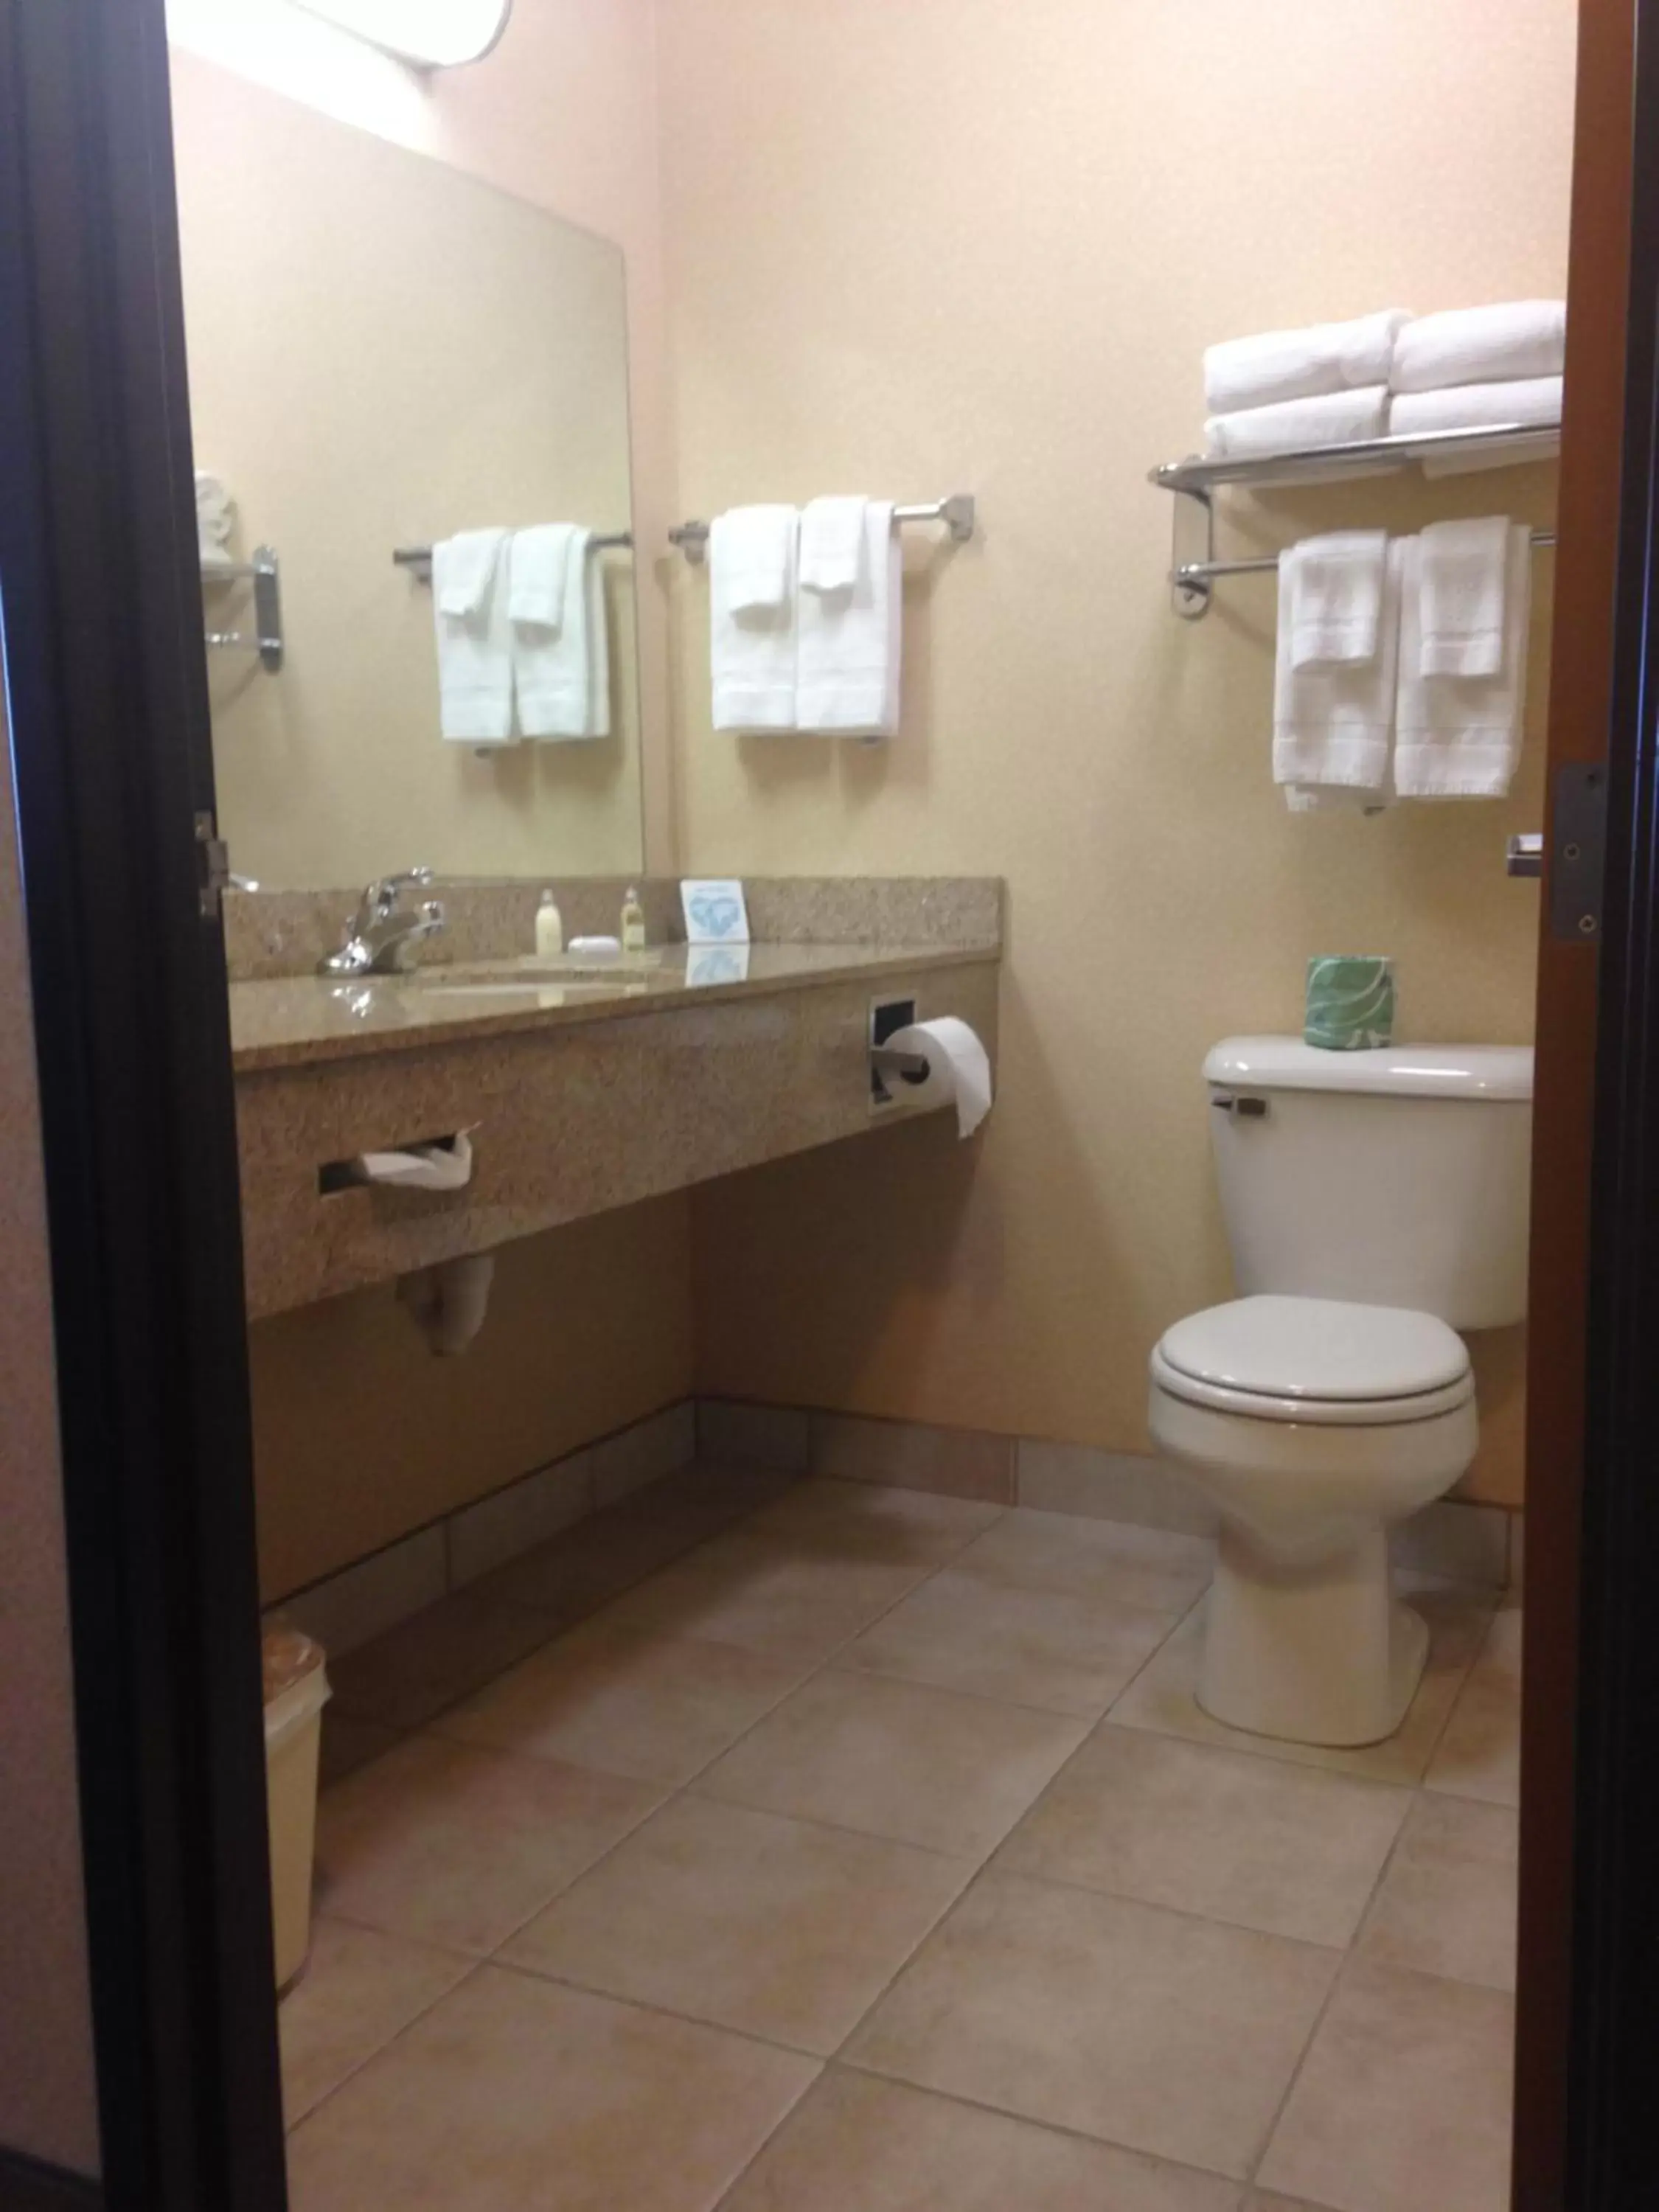 Toilet, Bathroom in Boarders Inn & Suites by Cobblestone Hotels - Shawano